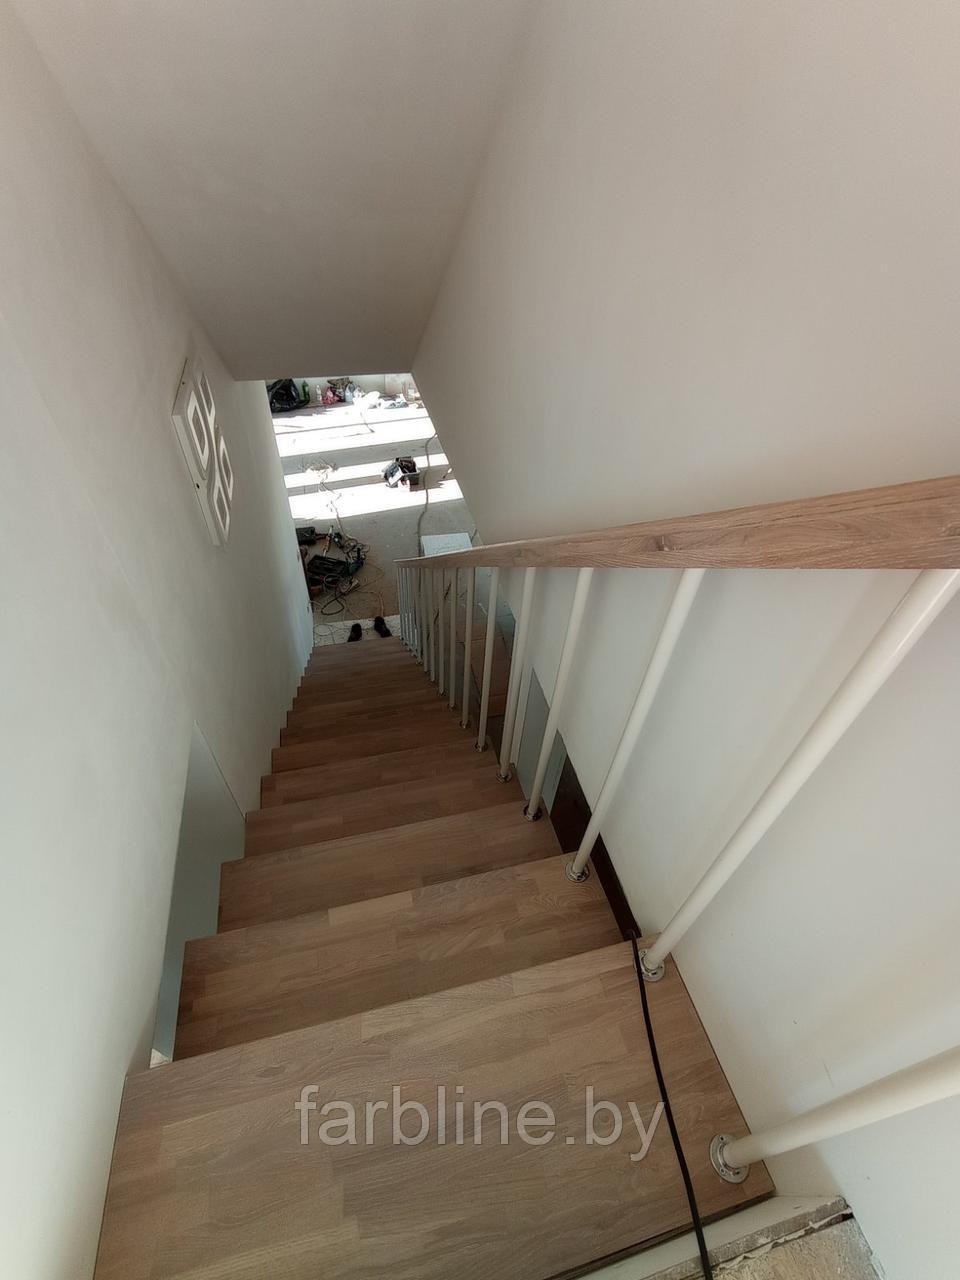 Дубовые ступени для лестницы срощенные (1000*300*40)